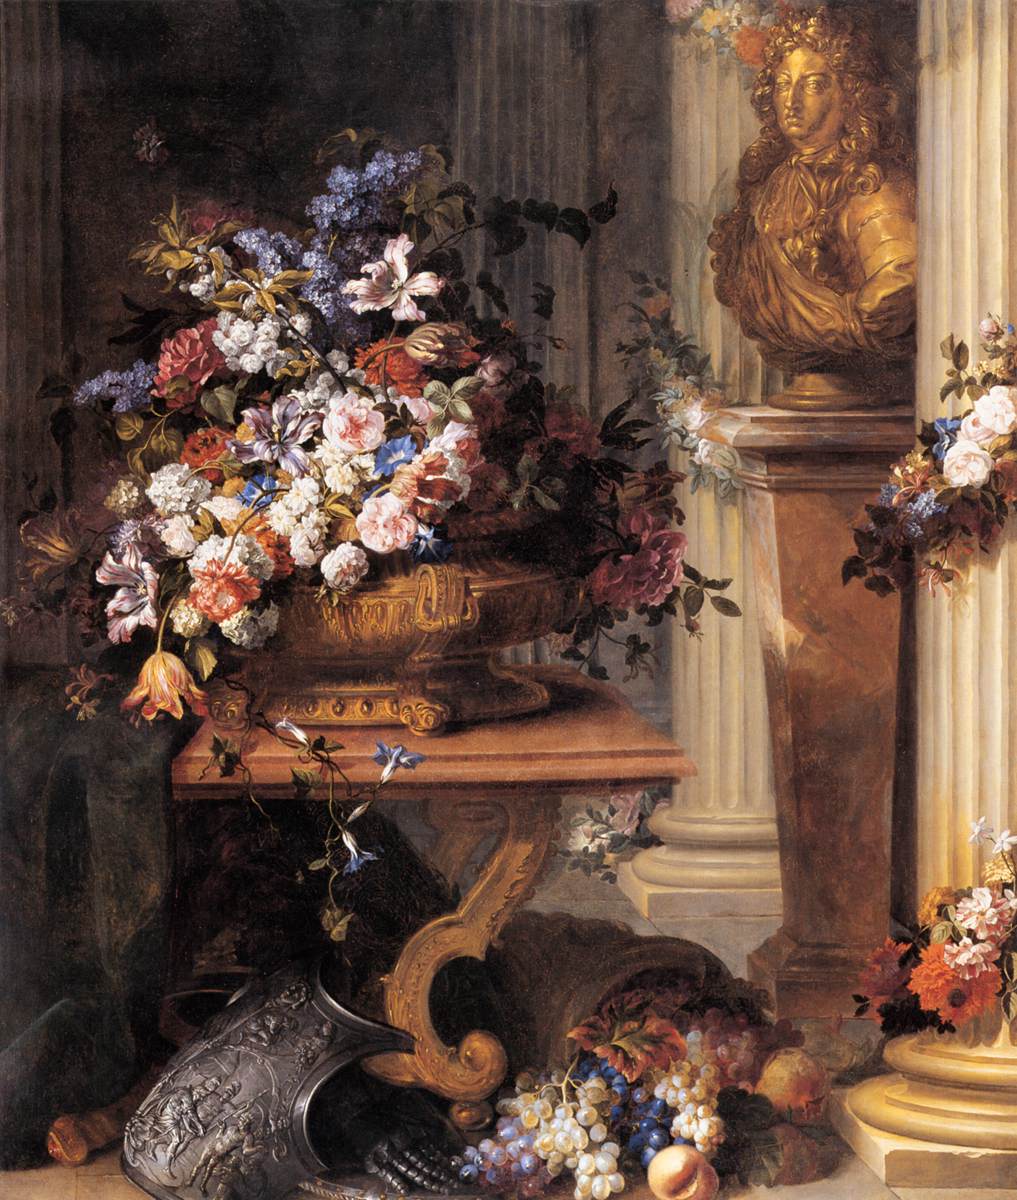 Blomster i en gylden vase, bust af Louis XIV, horn af overflod og rustning